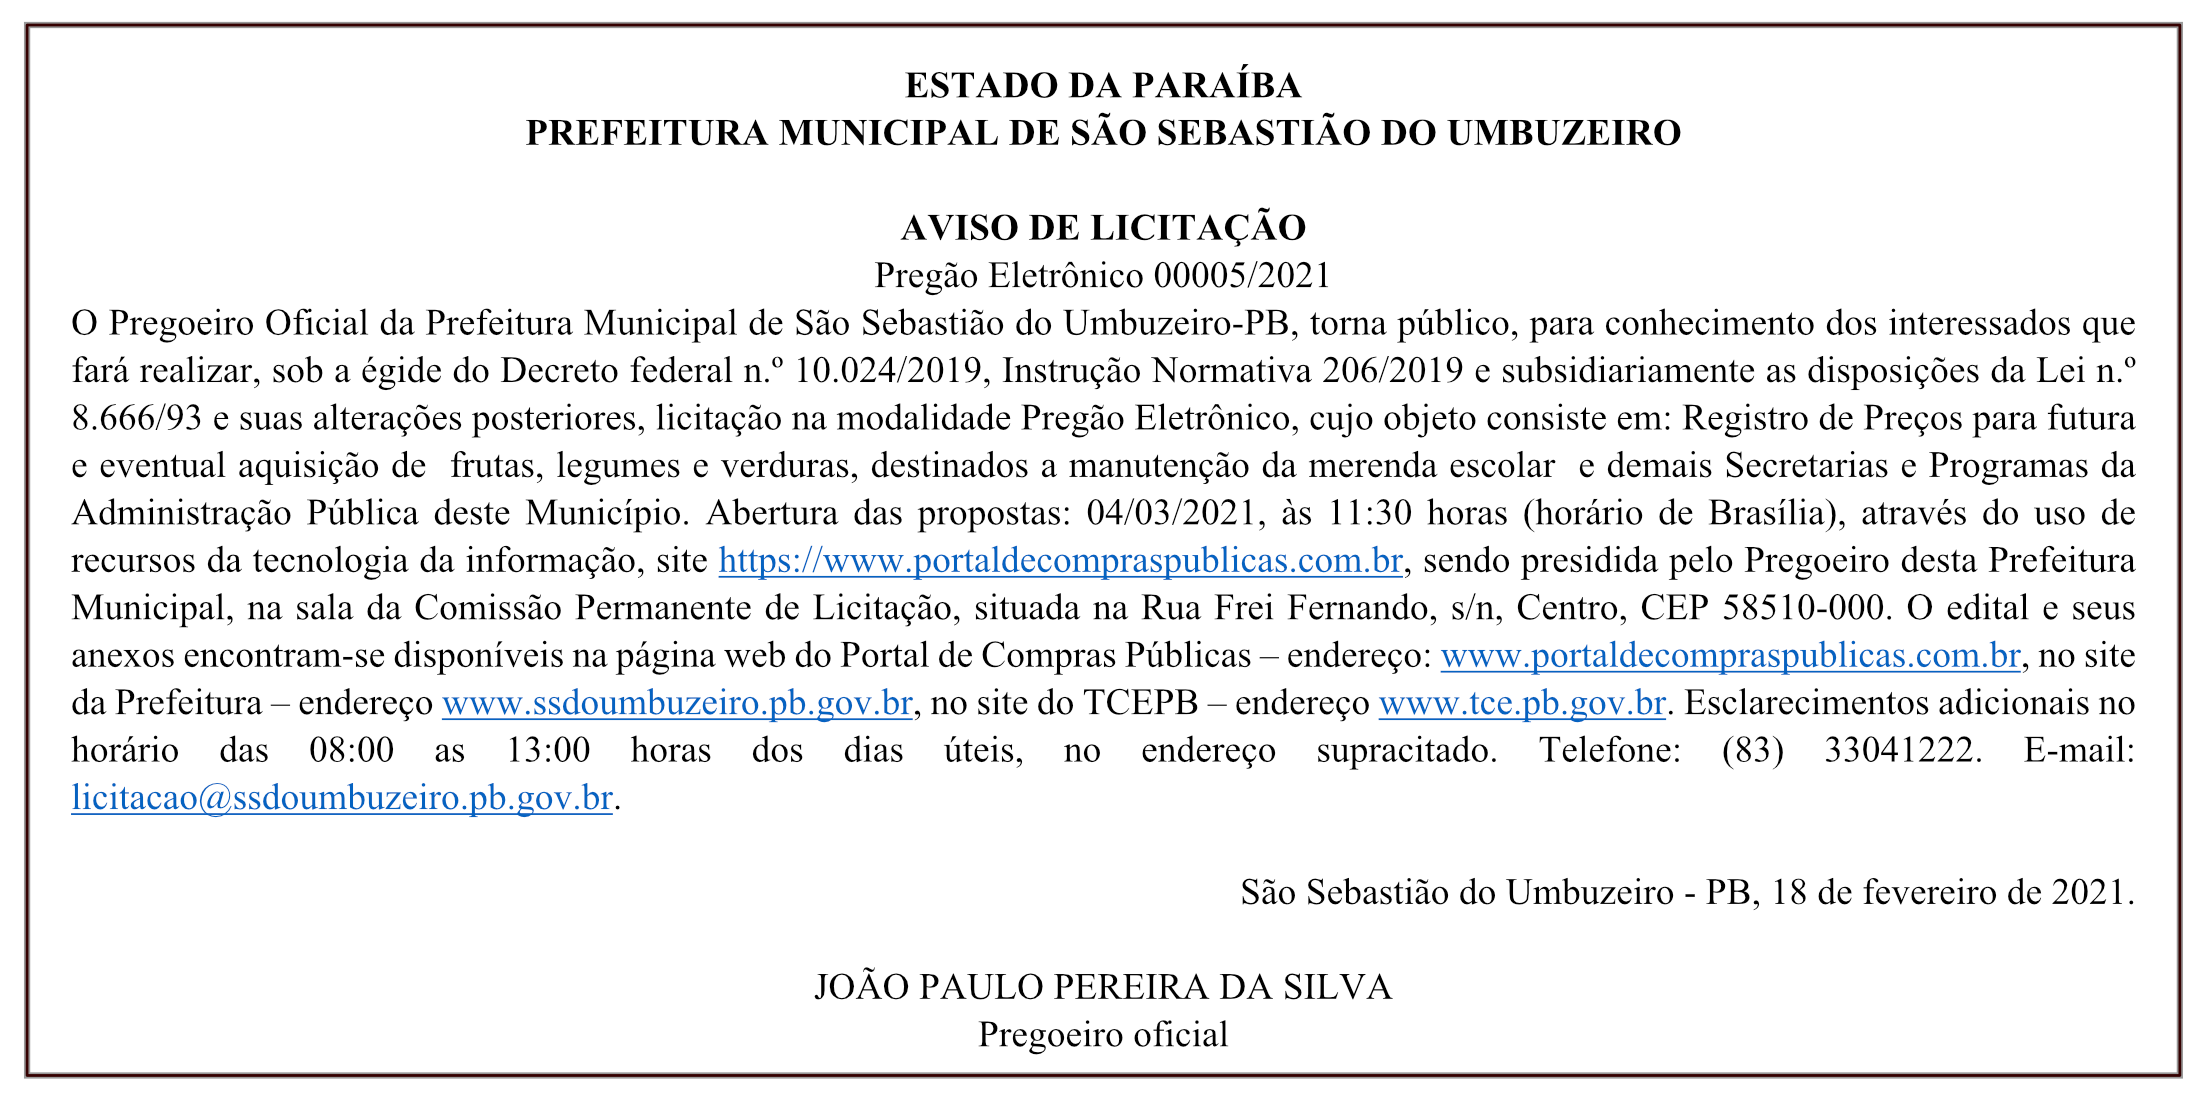 PREFEITURA MUNICIPAL DE SÃO SEBASTIÃO DO UMBUZEIRO – AVISO DE LICITAÇÃO – Pregão Eletrônico 00005/2021